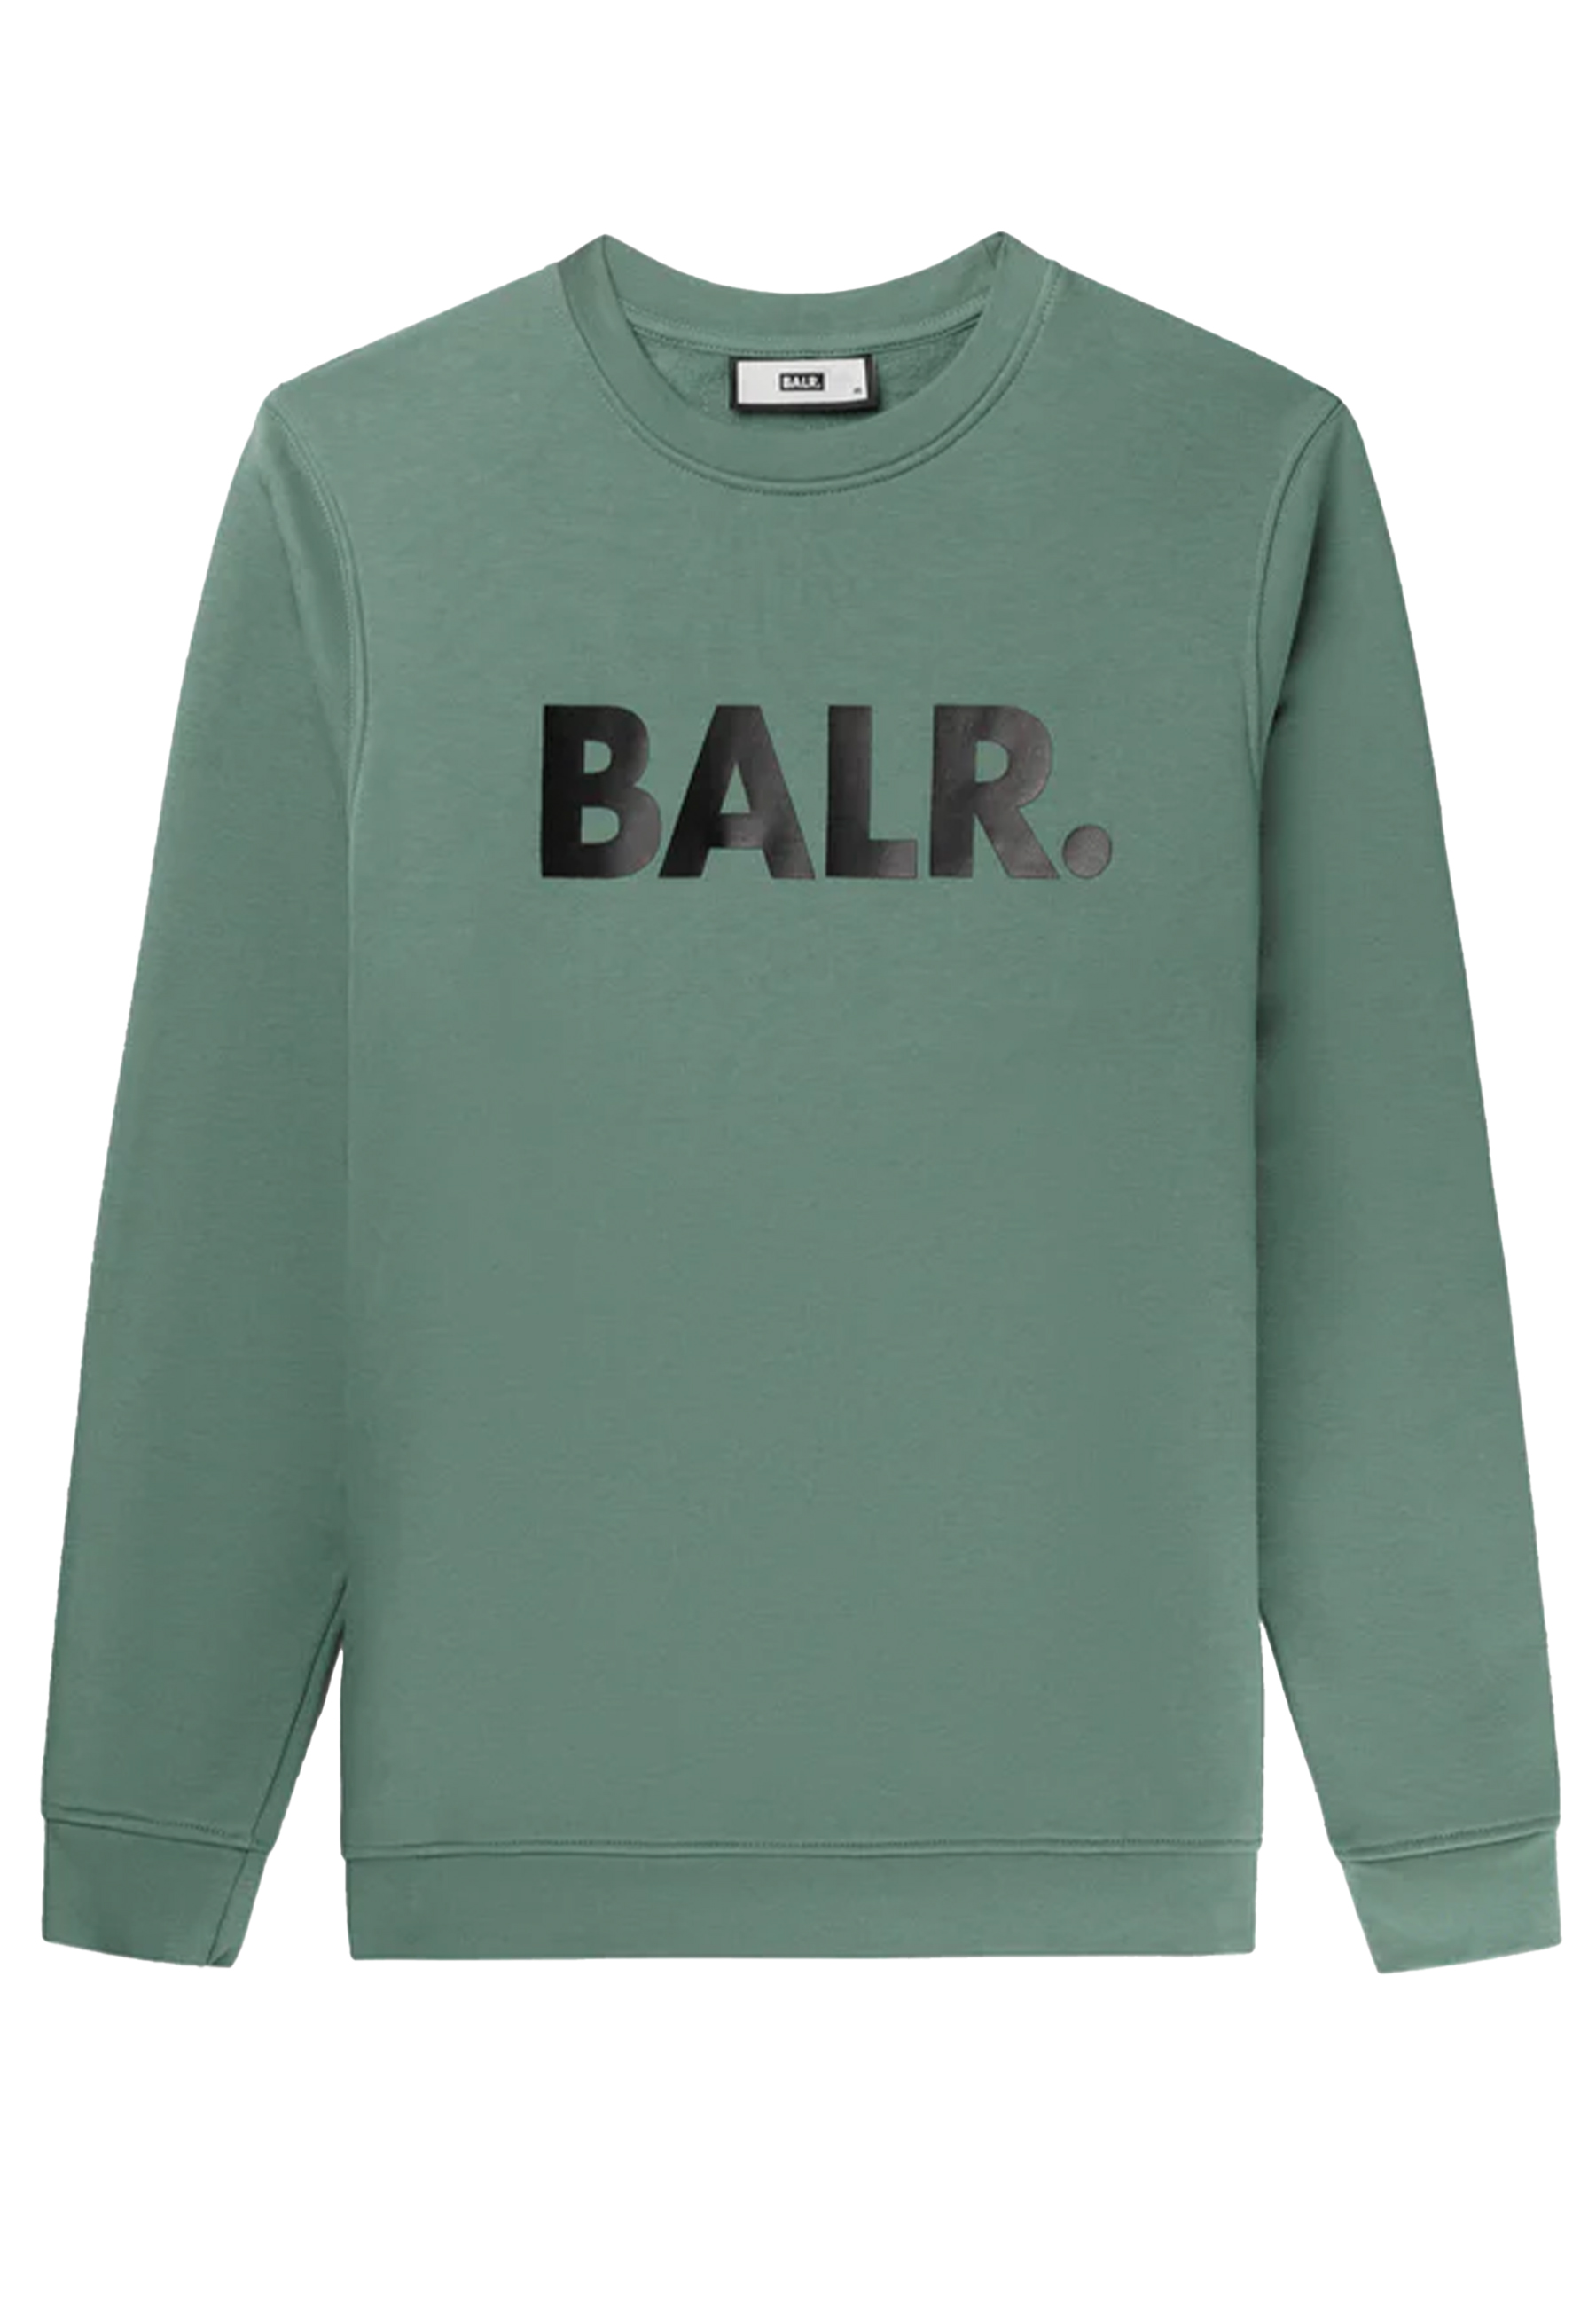 BALR. sweaters groen Heren maat XS